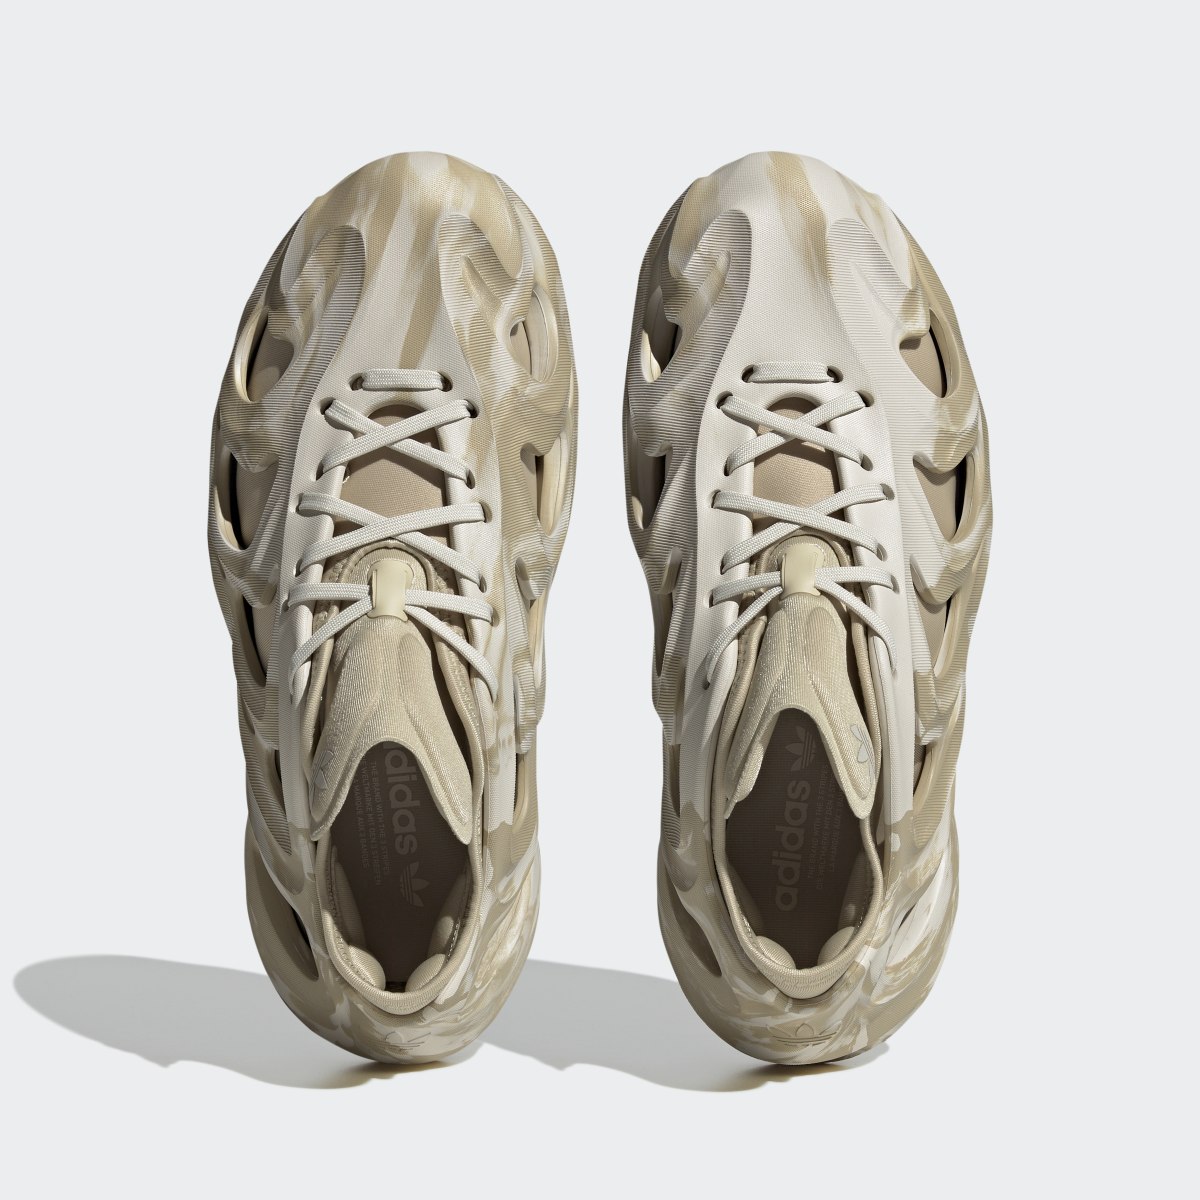 Adidas Adifom Q Shoes. 4